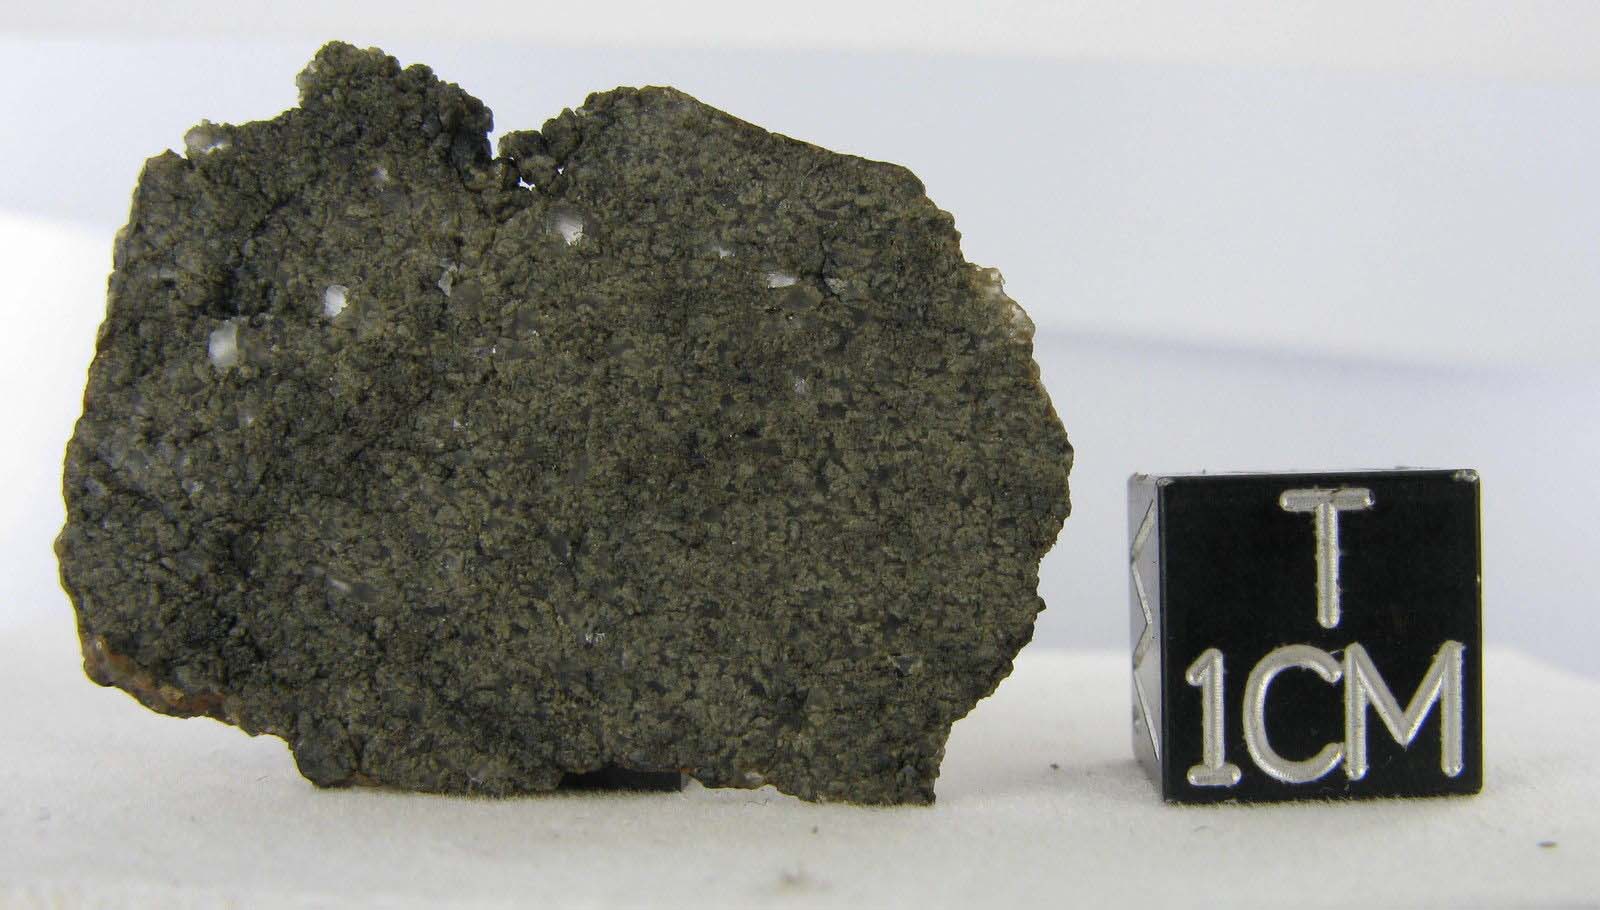 martian meteorite - NWA 2975 1.jpg